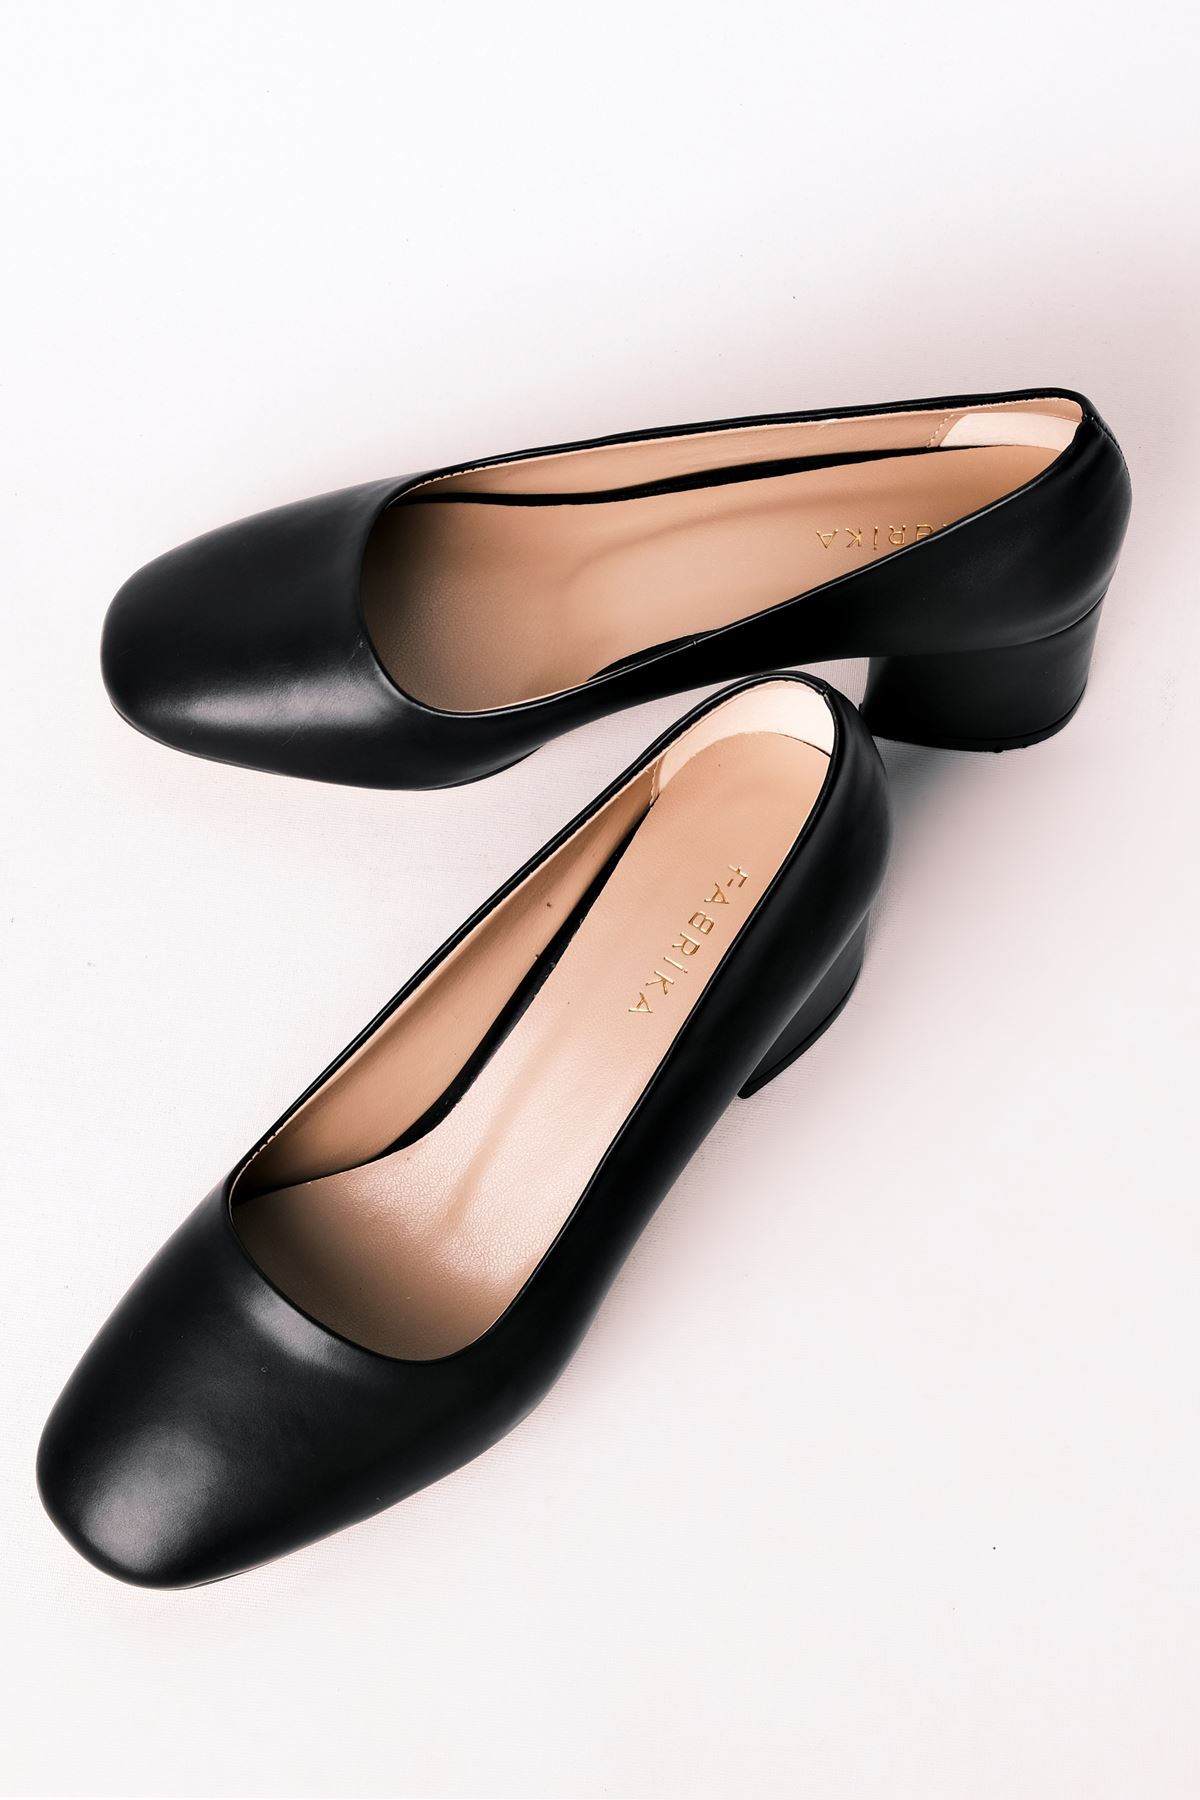 Edna Kadın Topuklu Ayakkabı Yuvarlak Burun-siyah